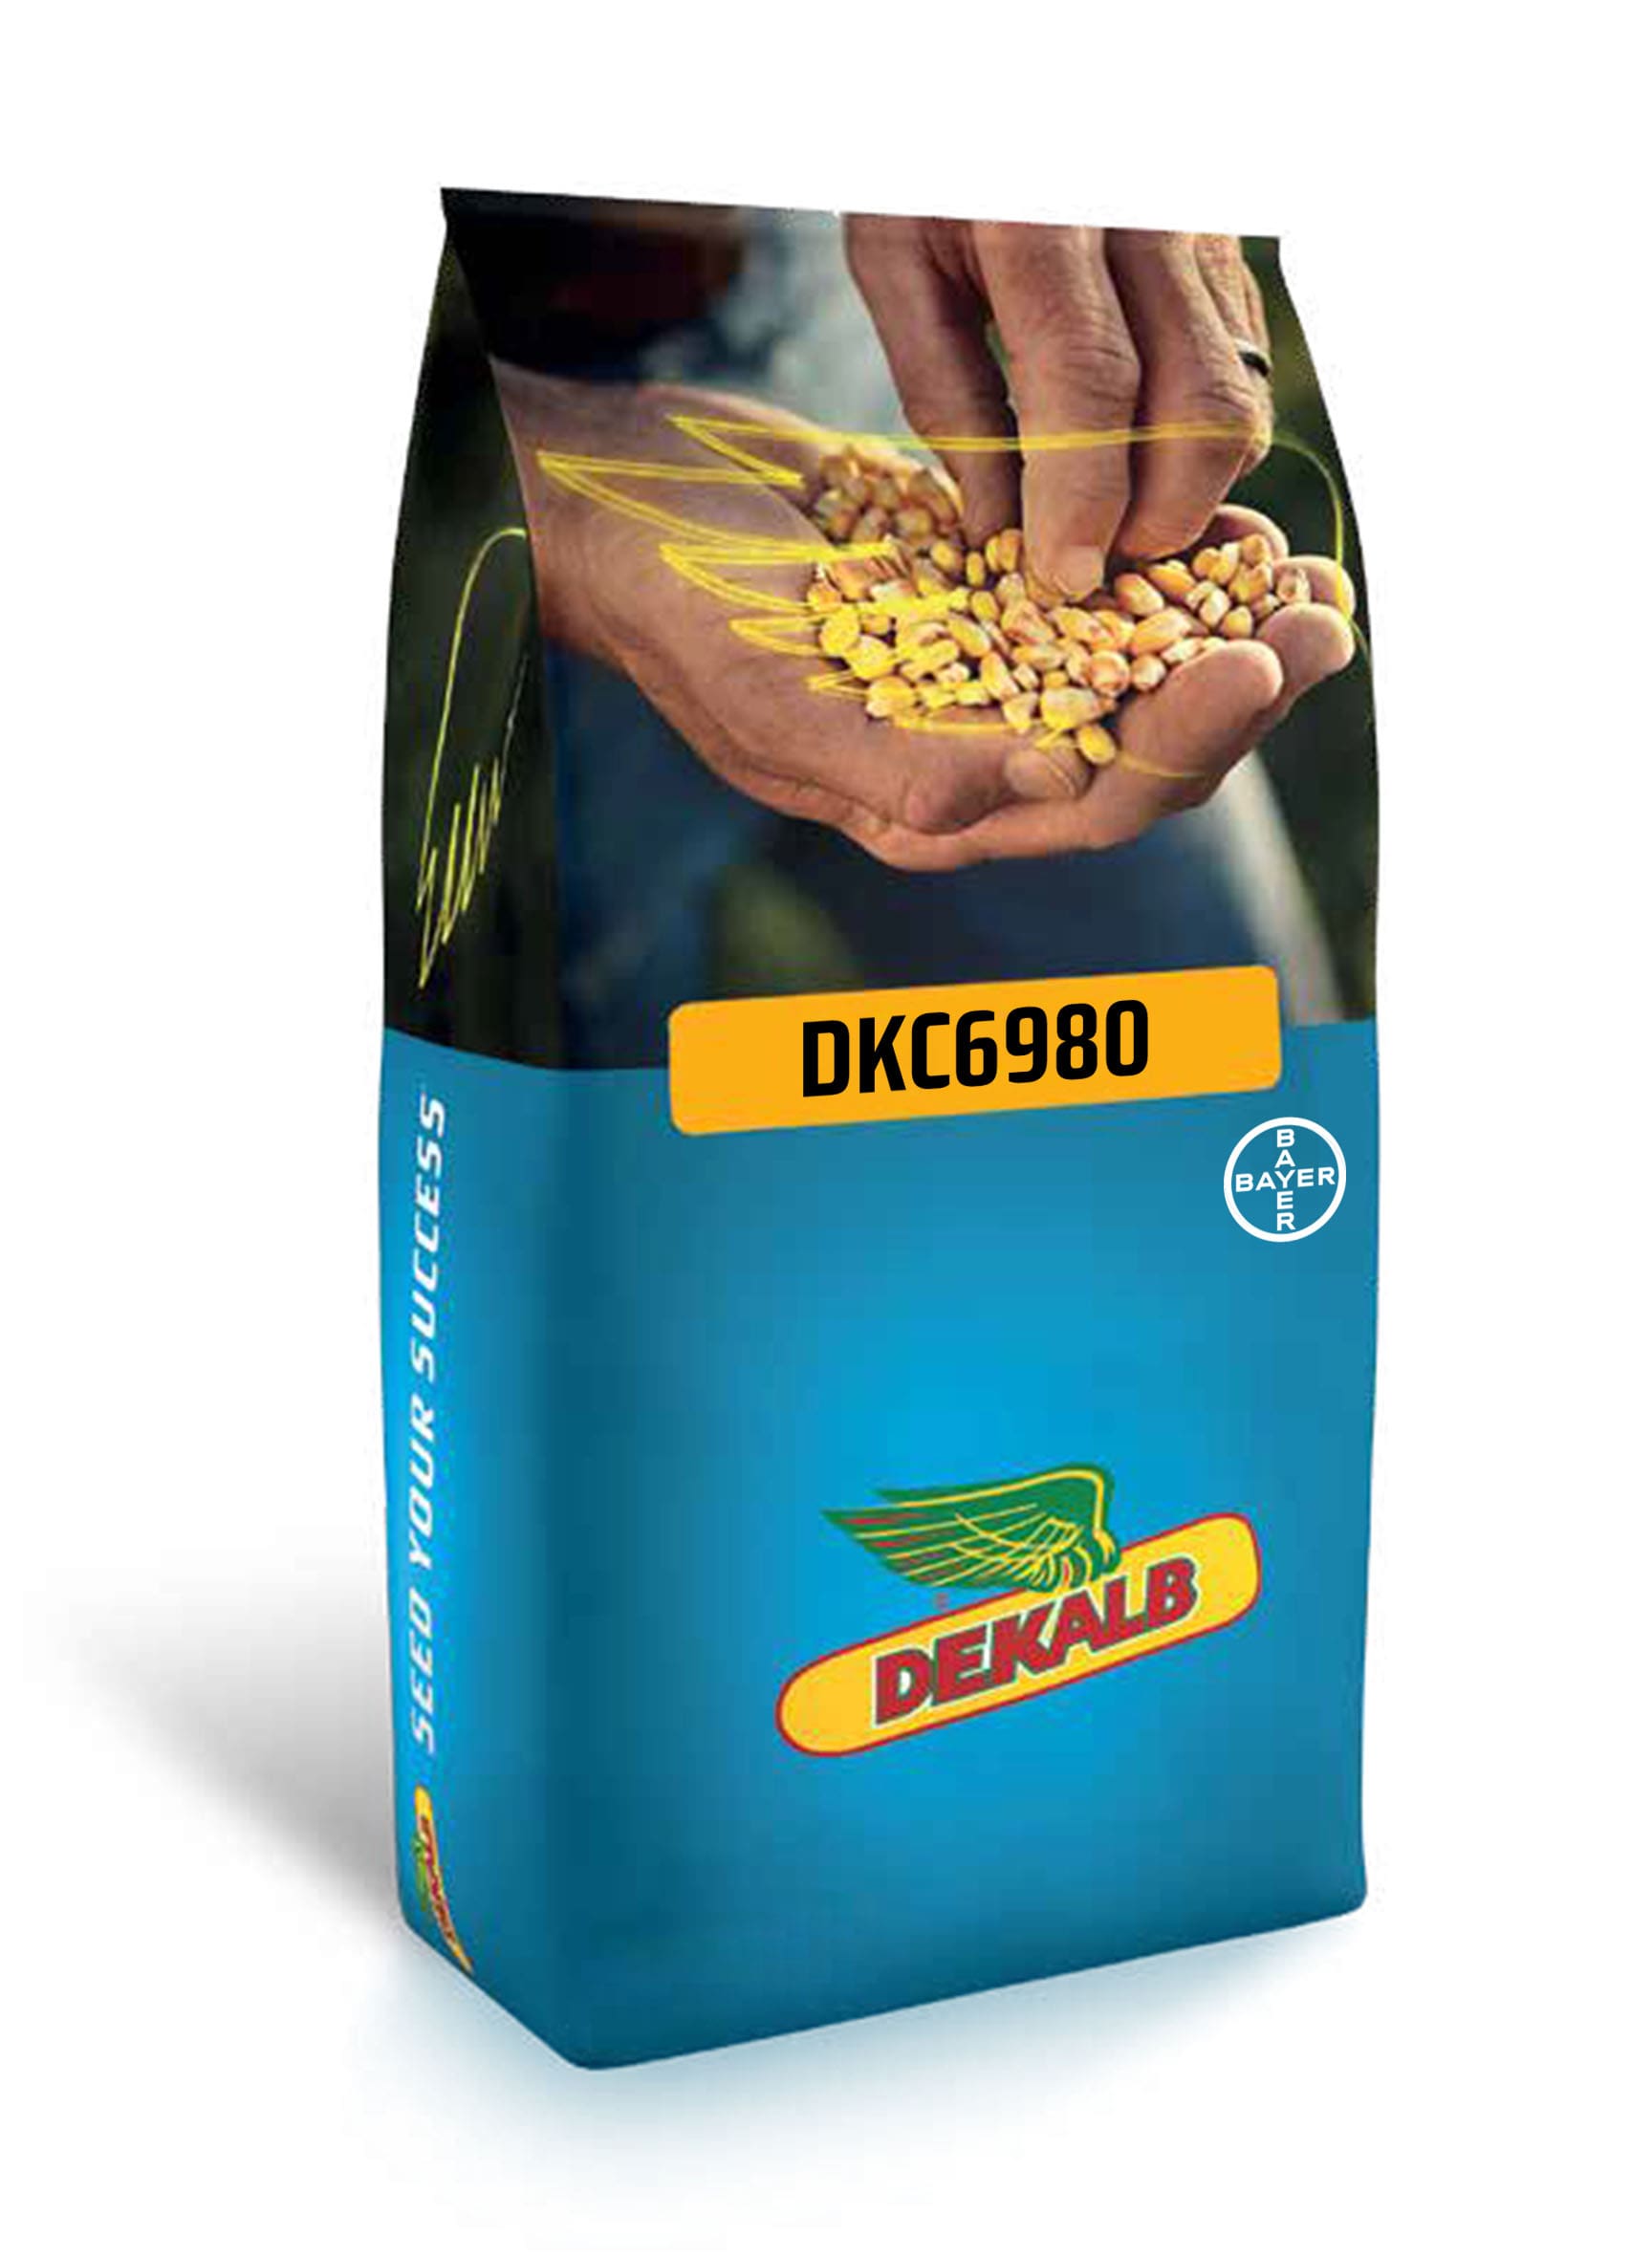 DKC6980